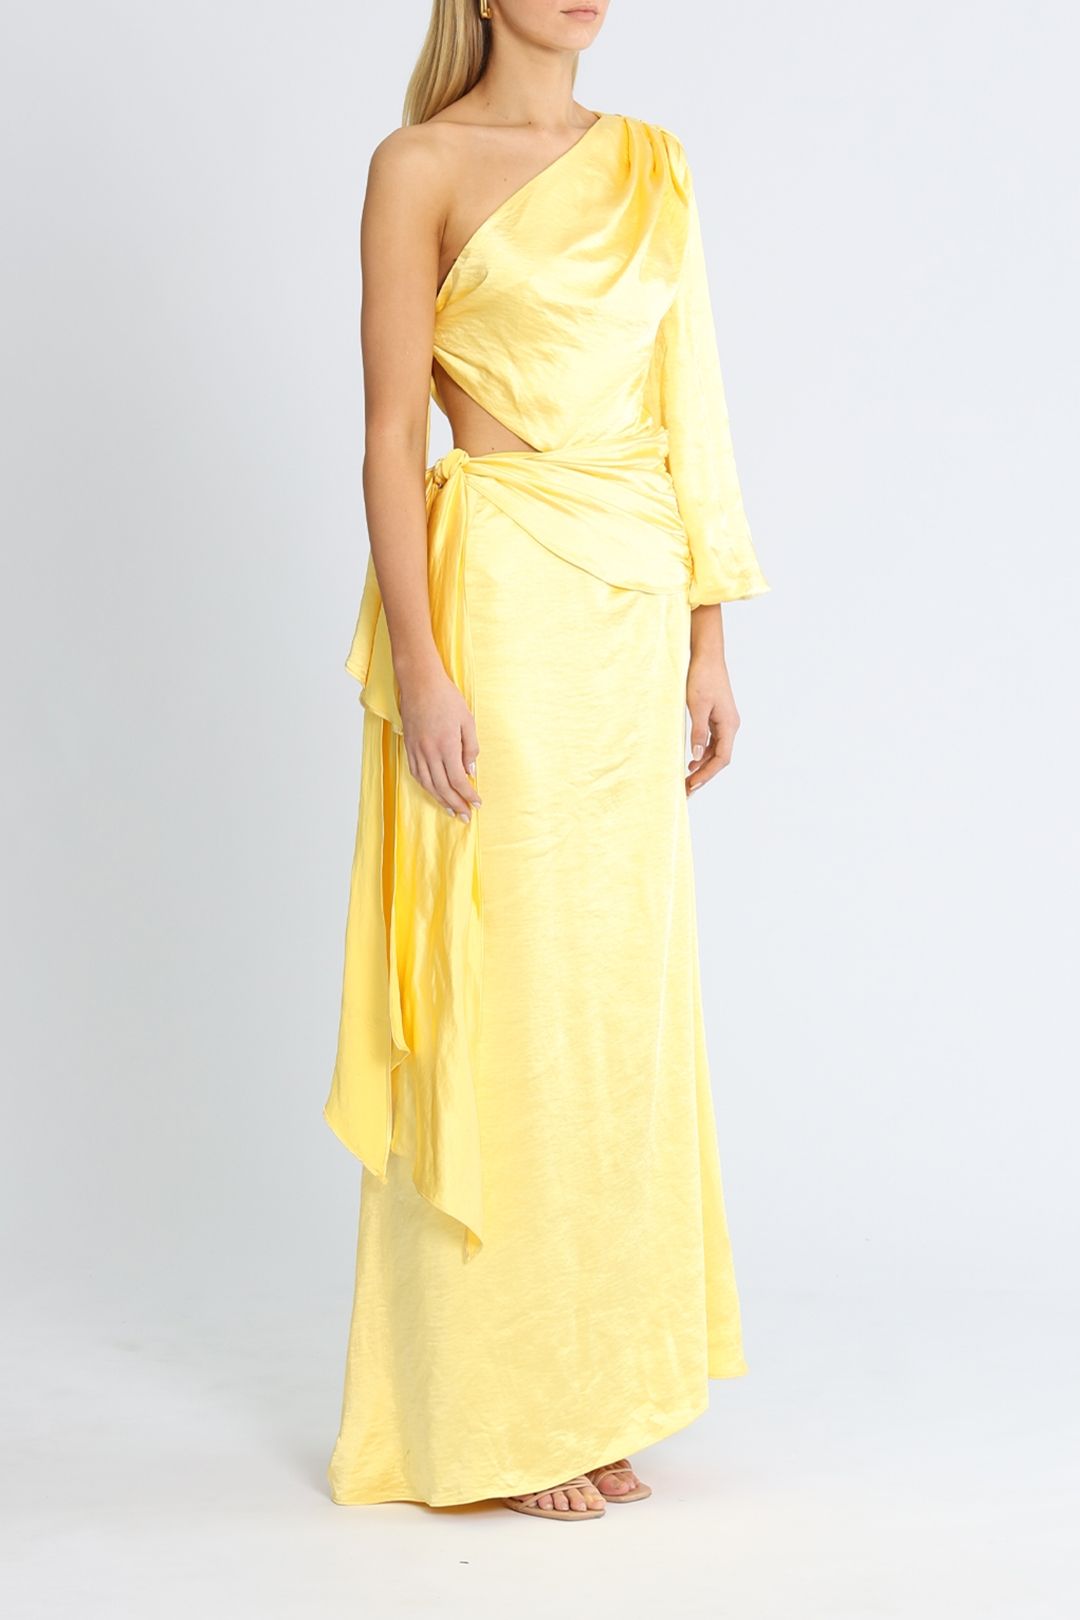 Elliatt Memento Dress Yellow satin